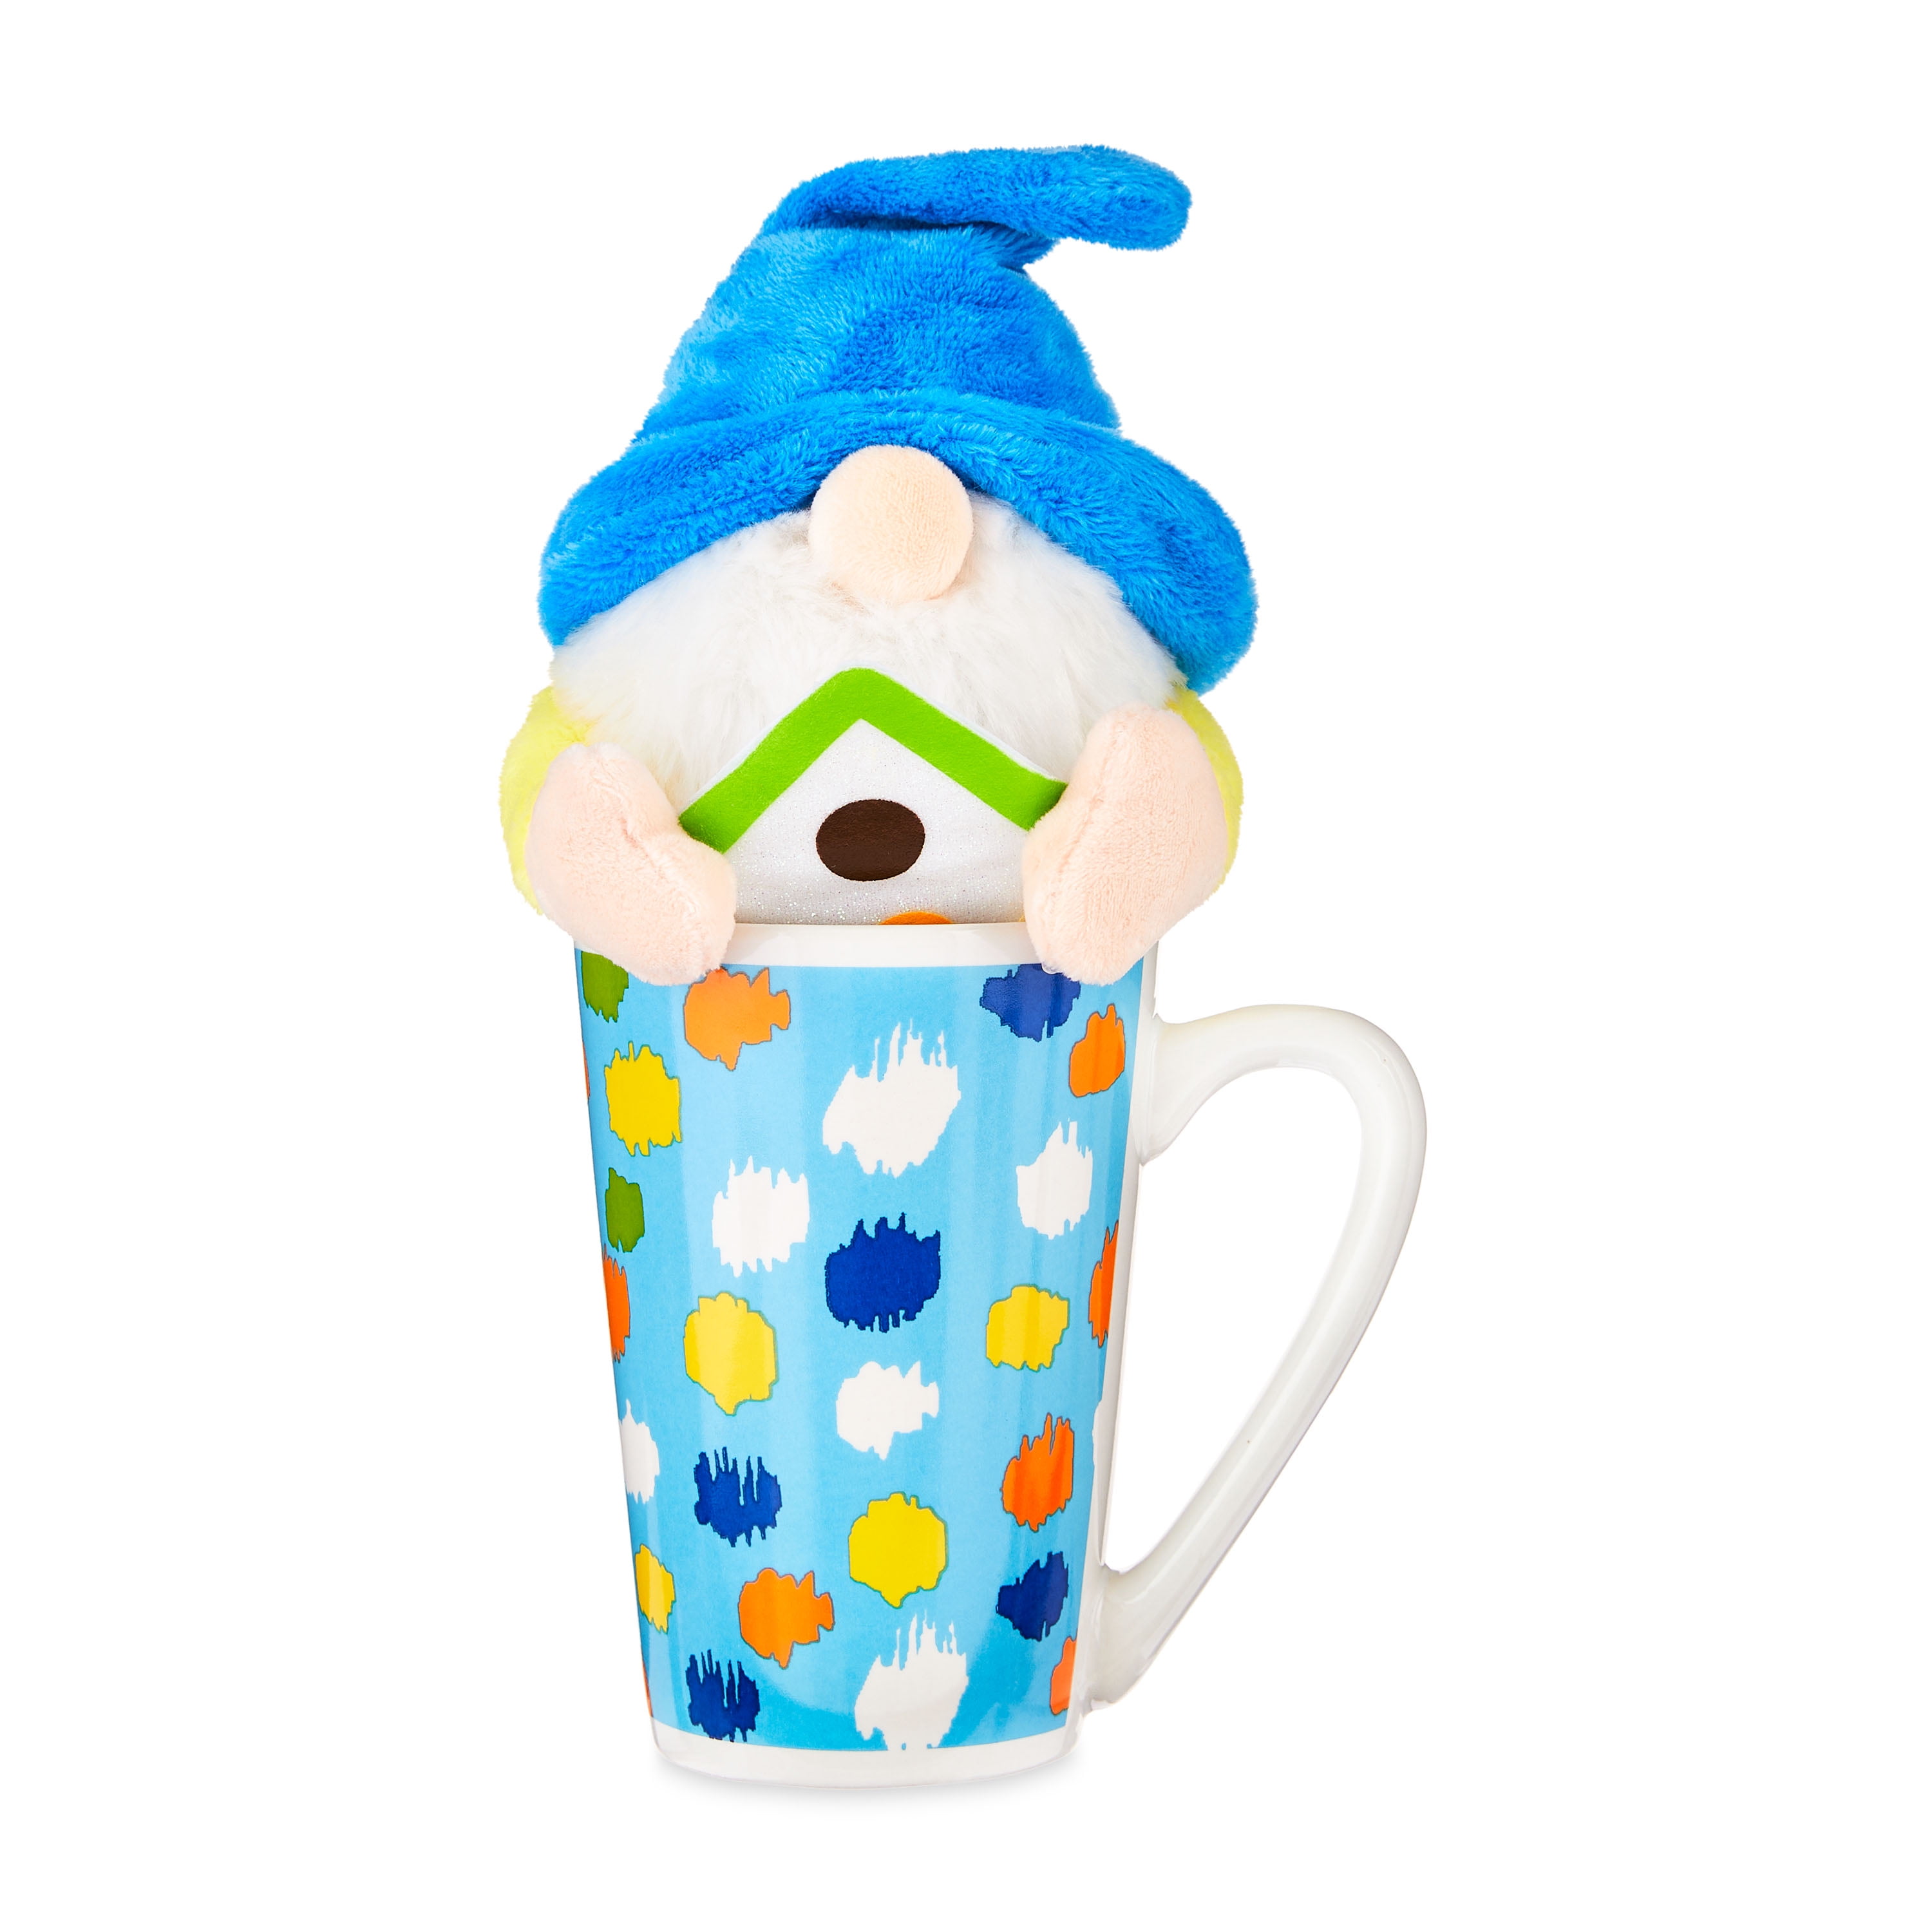 "Way to Celebrate! Easter Plush in Latte Mug, Gnome"